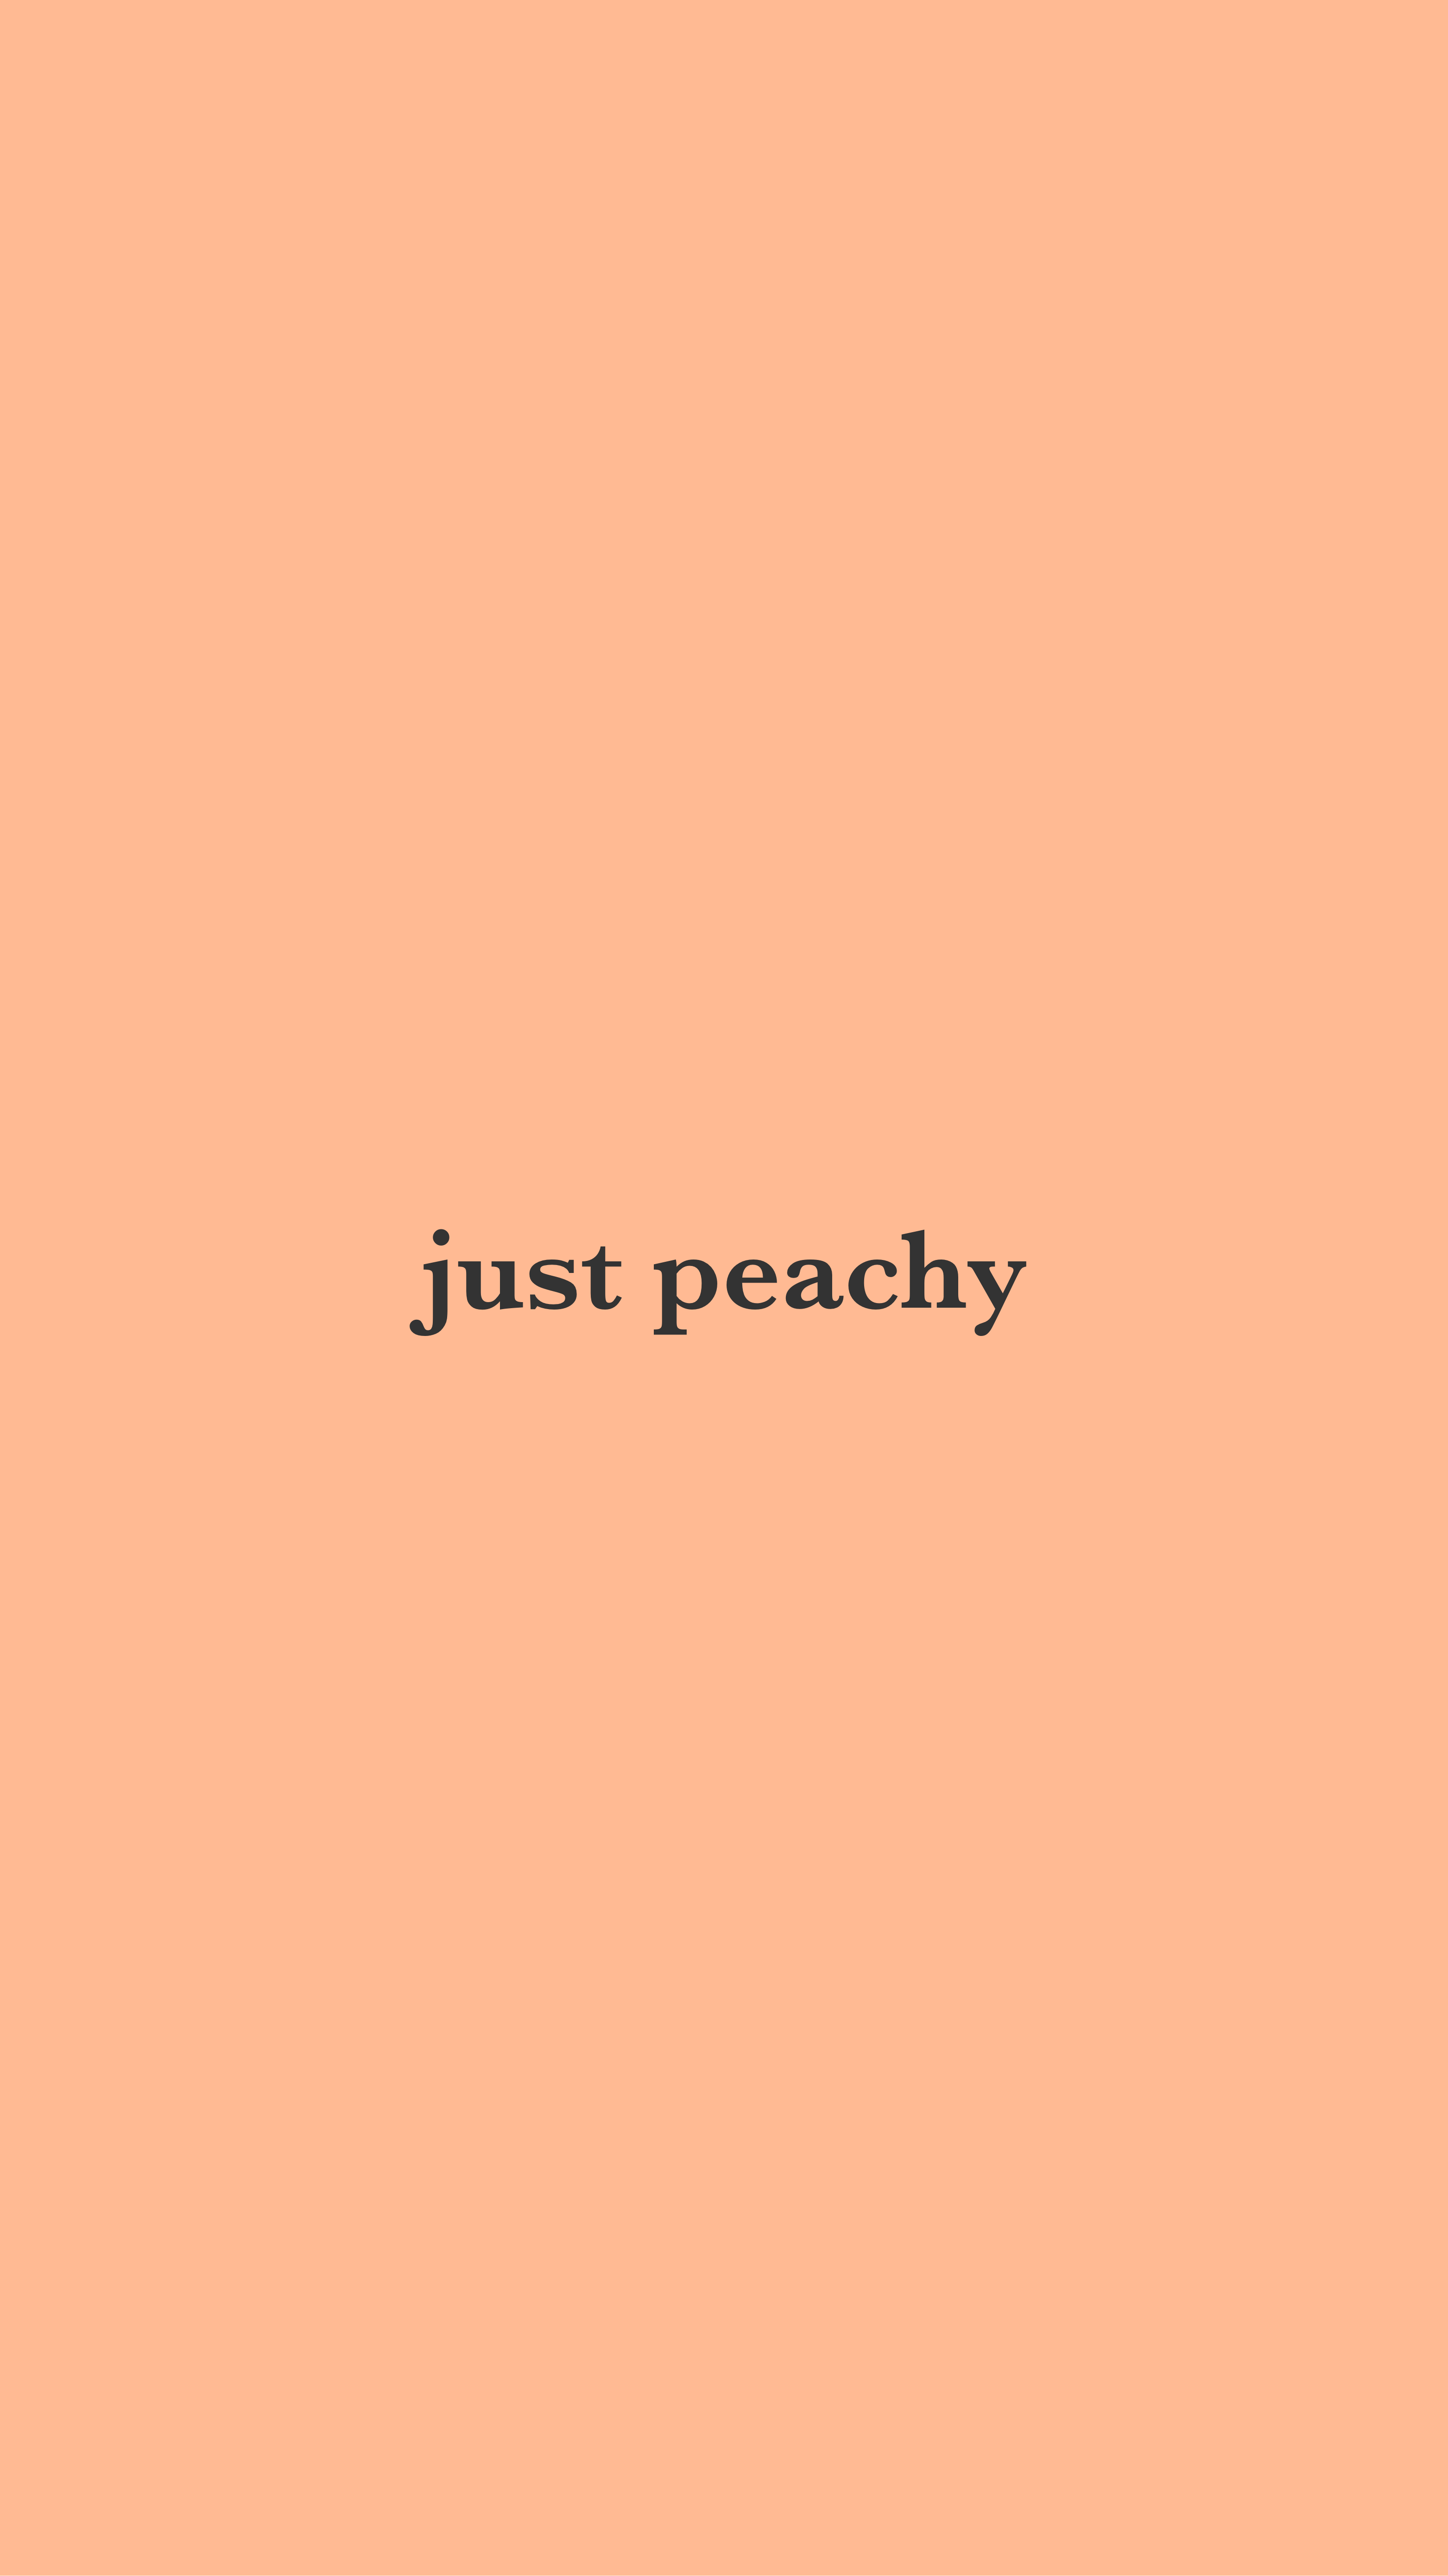 just peachy. Peach wallpaper, Peach aesthetic, Just peachy